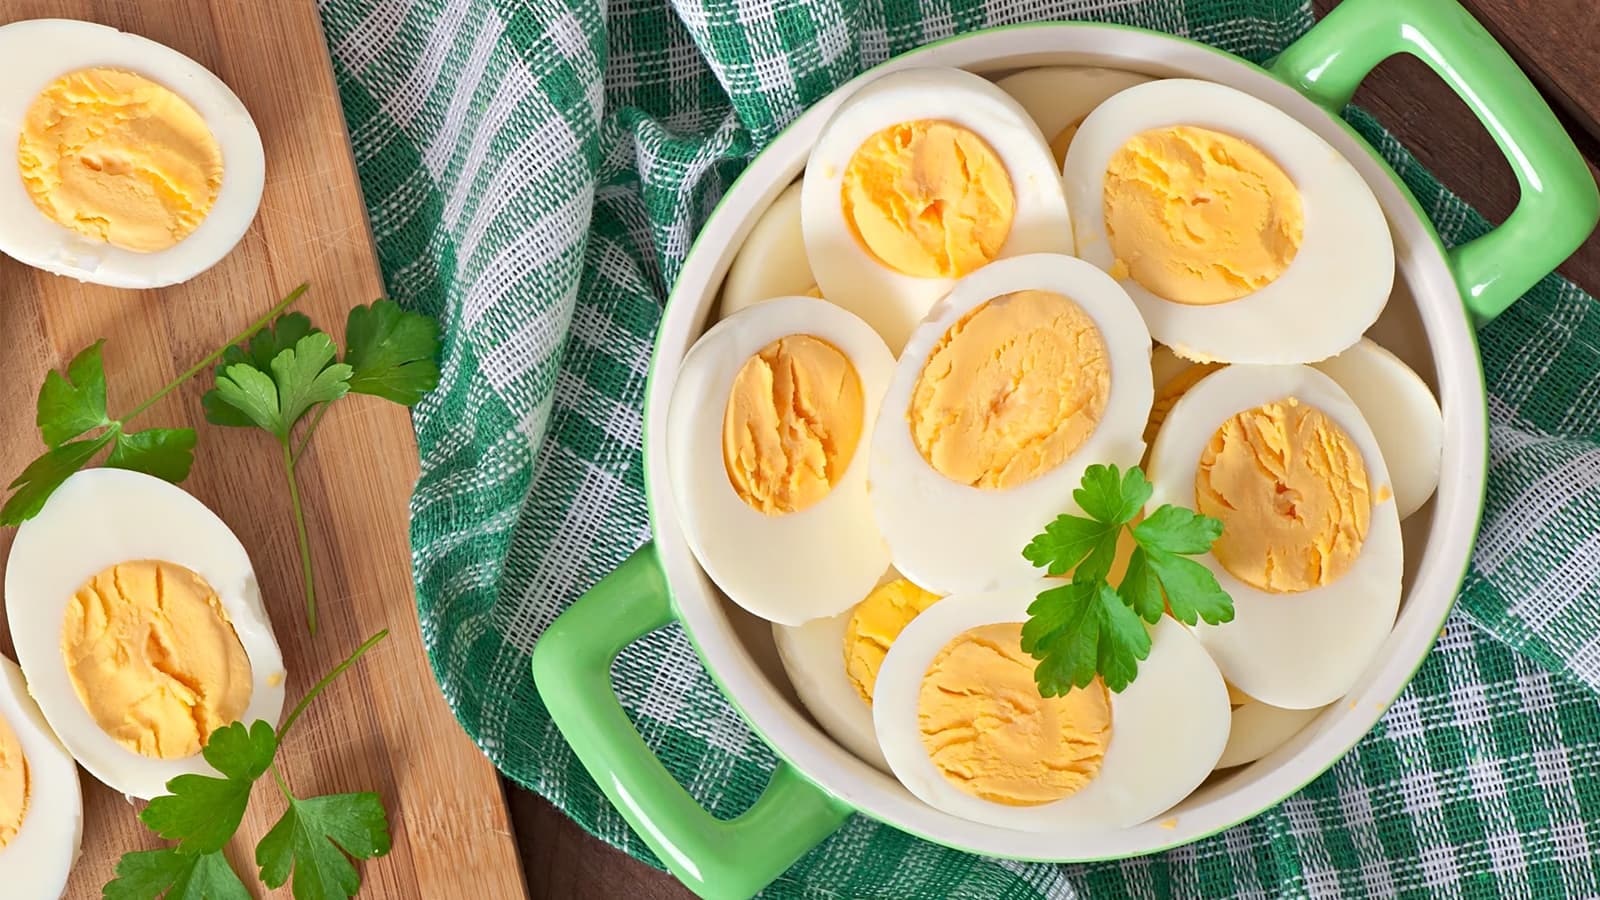 Wie gesund sind Eier? Bild, auf dem mehrere gekochte Eier in einer Schüssel zu sehen sind.